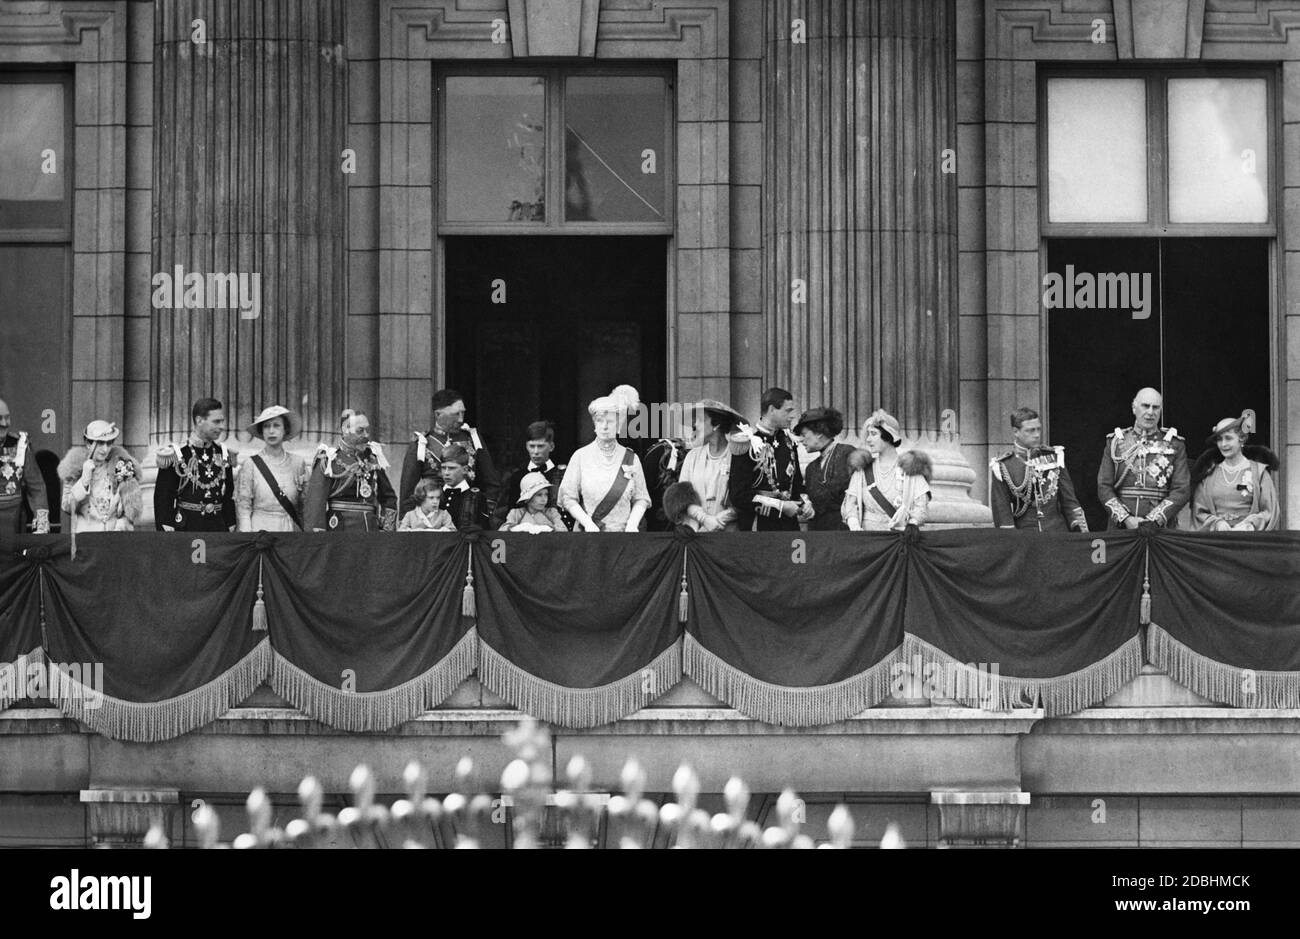 Le roi George V et la reine Mary de Teck avec leurs parents sur le balcon de Buckingham Palace à l'occasion du 25e anniversaire du trône. De gauche à droite : Prince Arthur de Connaught, Reine Maertha de Norvège, Duc de York, Royal Princess Mary, Roi George V, Princesse Margaret Rose, Gerald Lascelles, comte de Harewood (derrière), princesse Elizabeth, vicomte Lascelles (derrière), reine Mary, Duchess Marina et duc George Edward de Kent, princesse Victoria, duchesse de York, Princesse de Galles, comte et comtesse d'Athlone. Banque D'Images